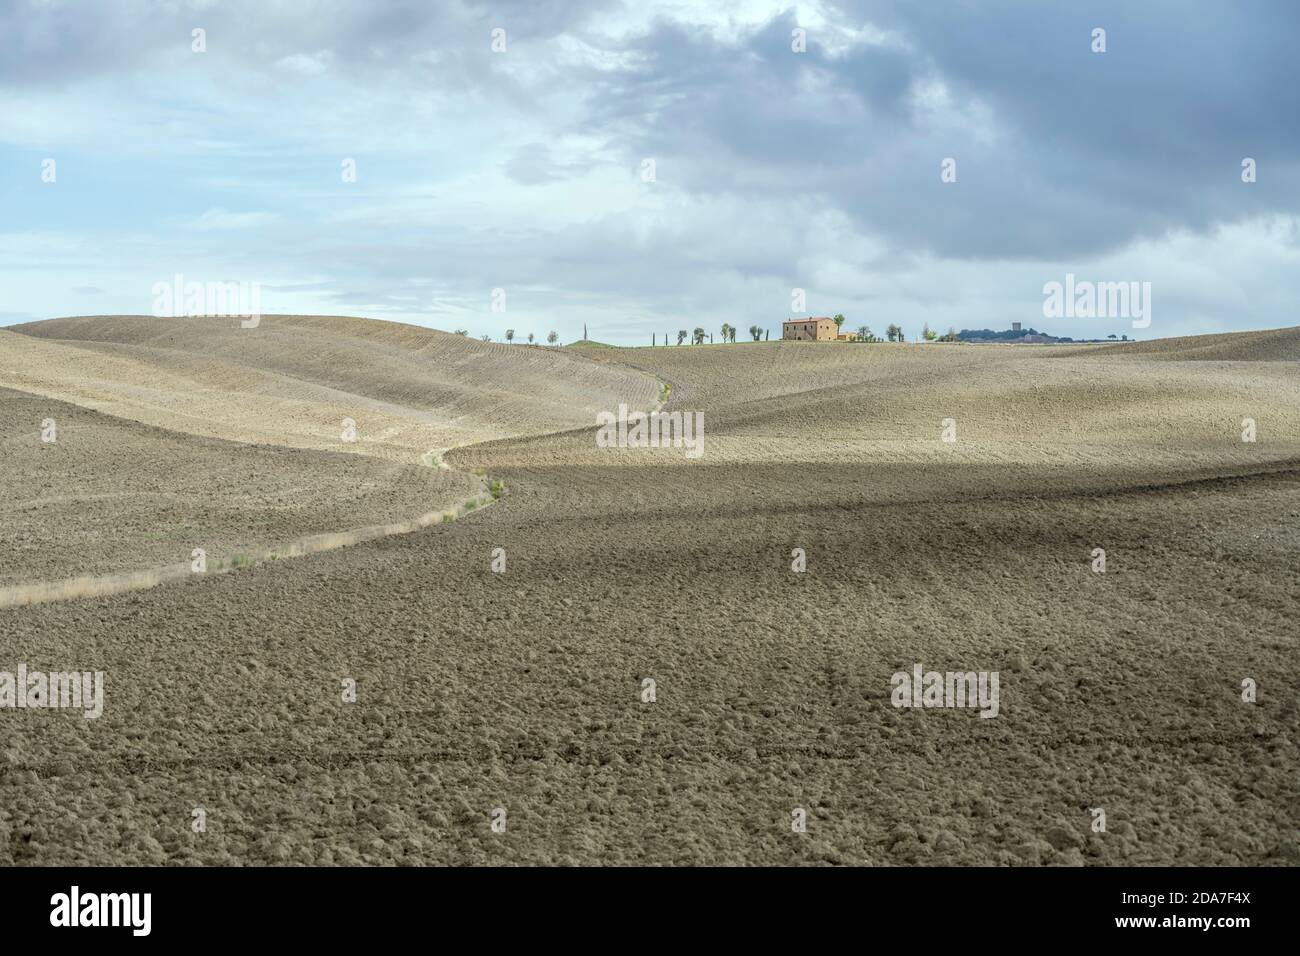 Paesaggio con lievi pendii di colline arate nella campagna toscana, girato in luce intensa vicino a Biancamicia, Siena, Toscana, Italia Foto Stock